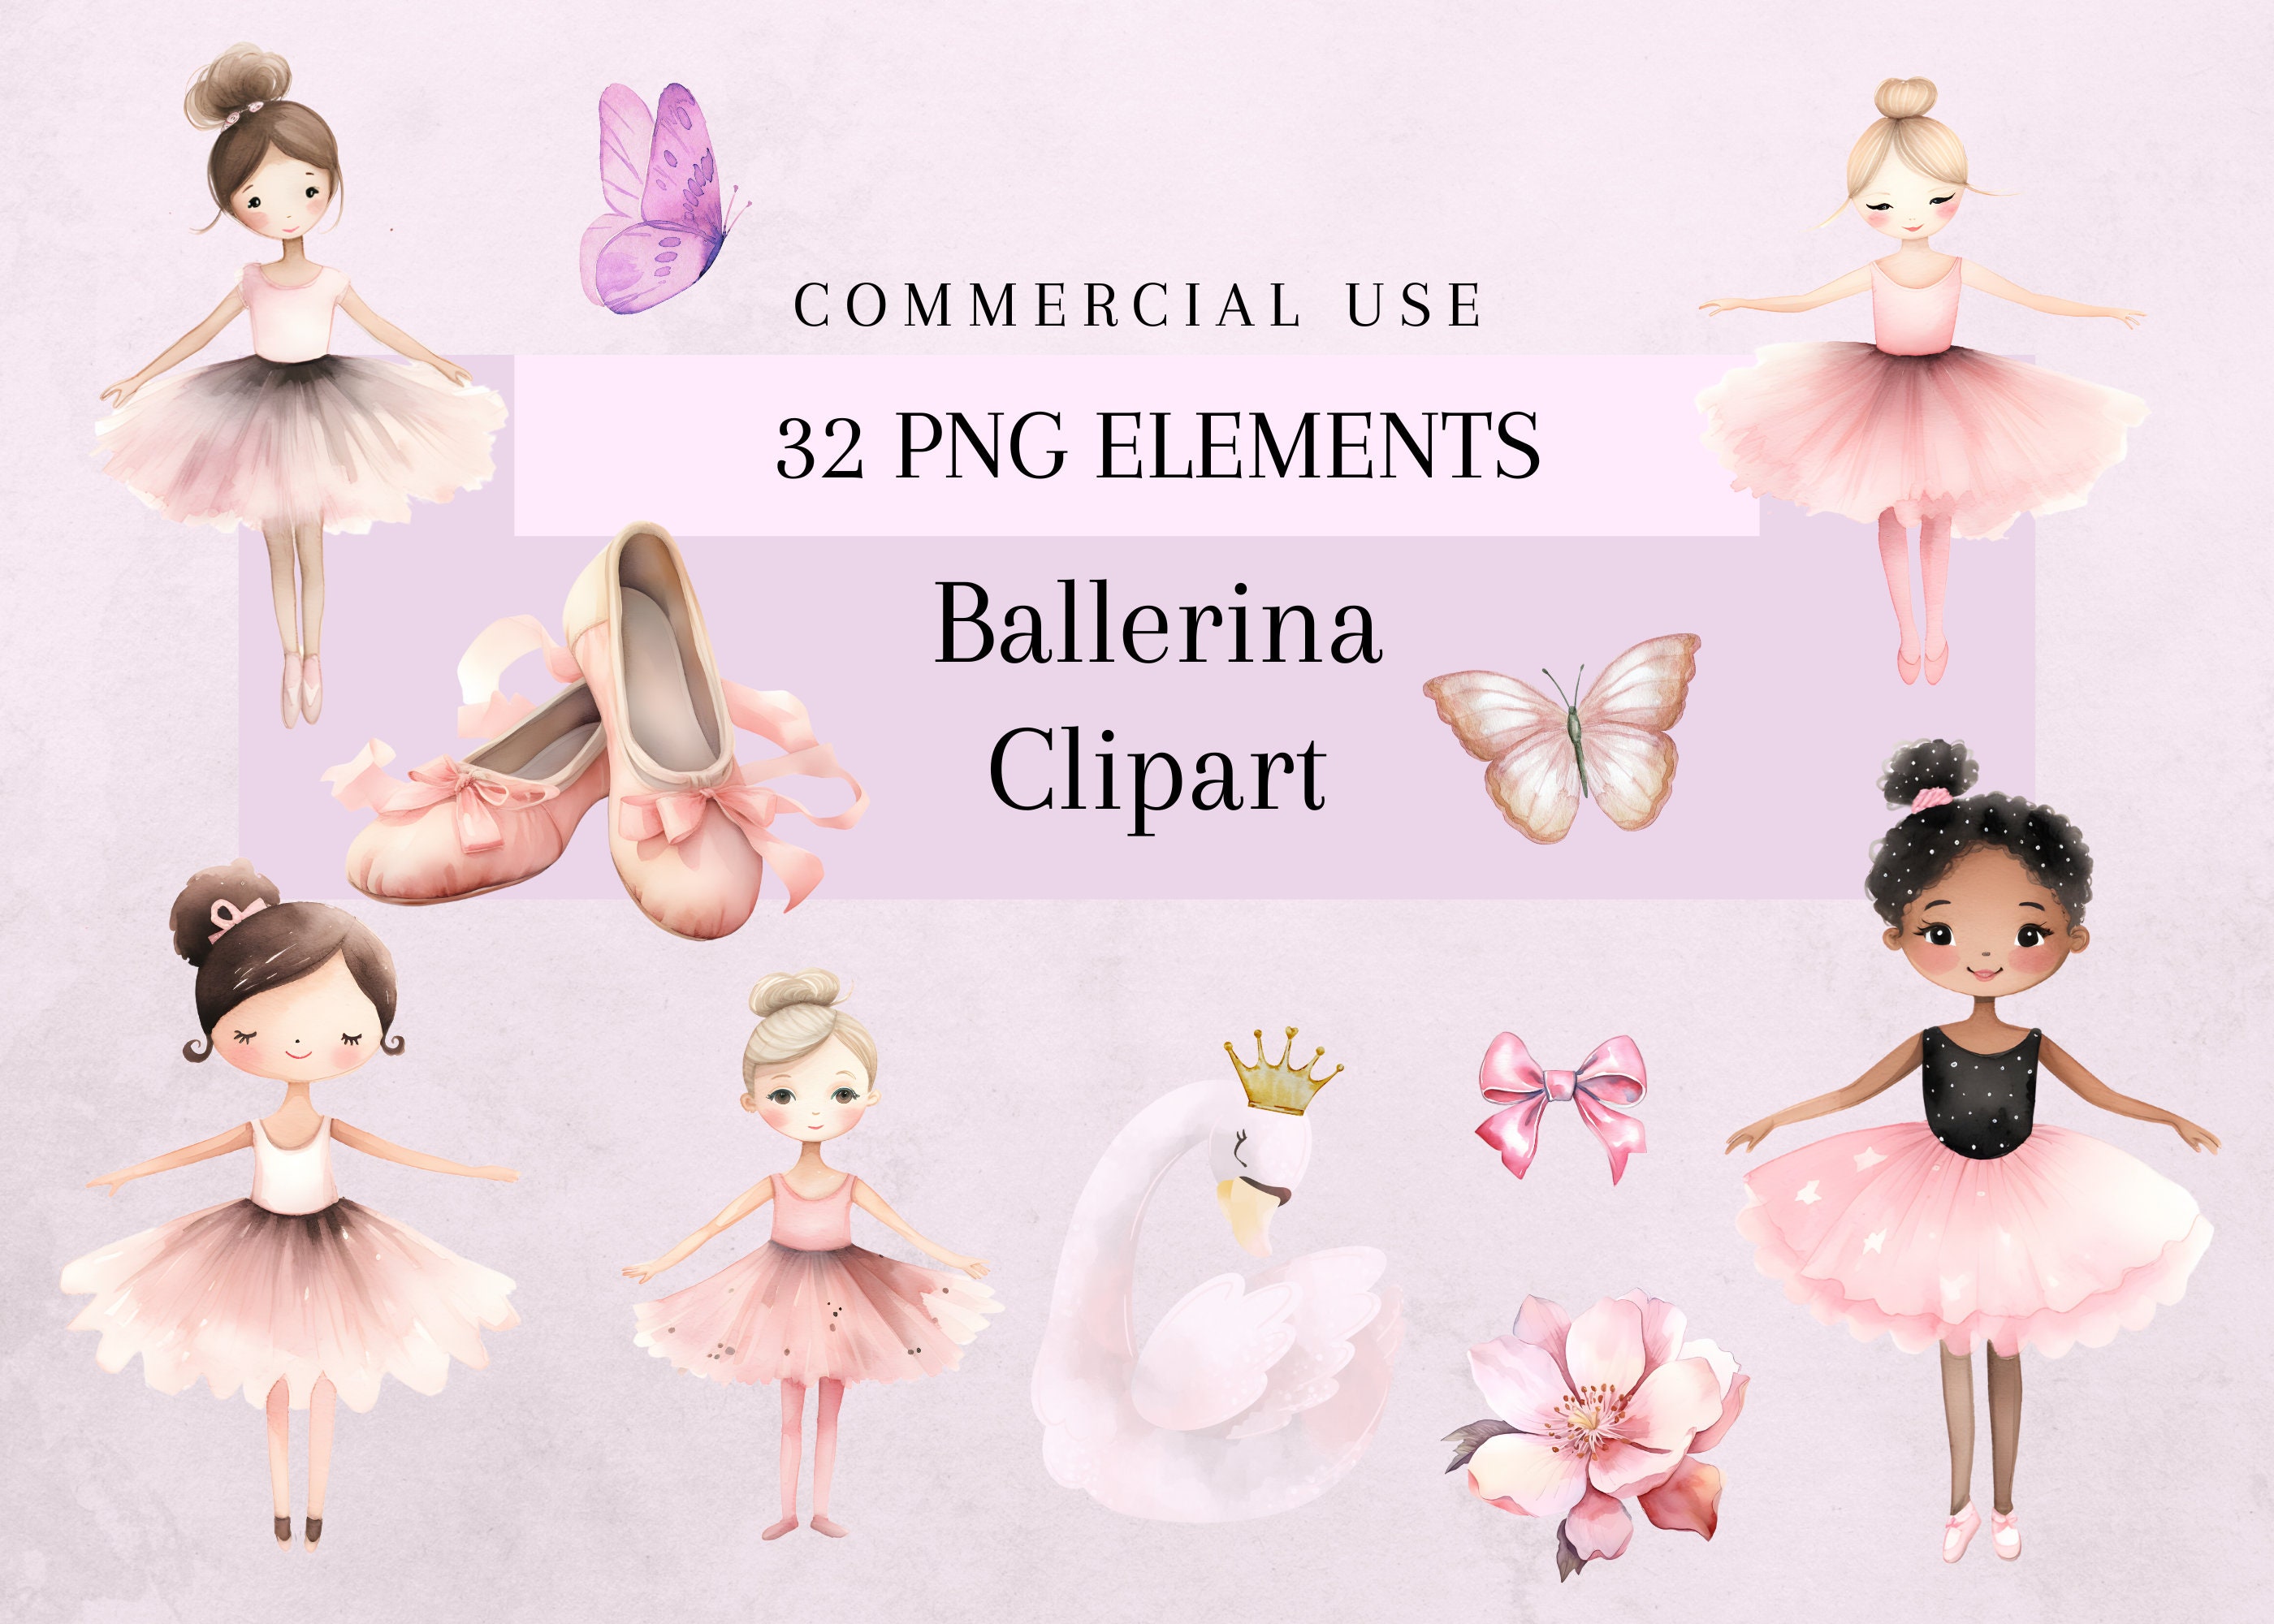 Ballet Digital Stickers – Social Media Calendar